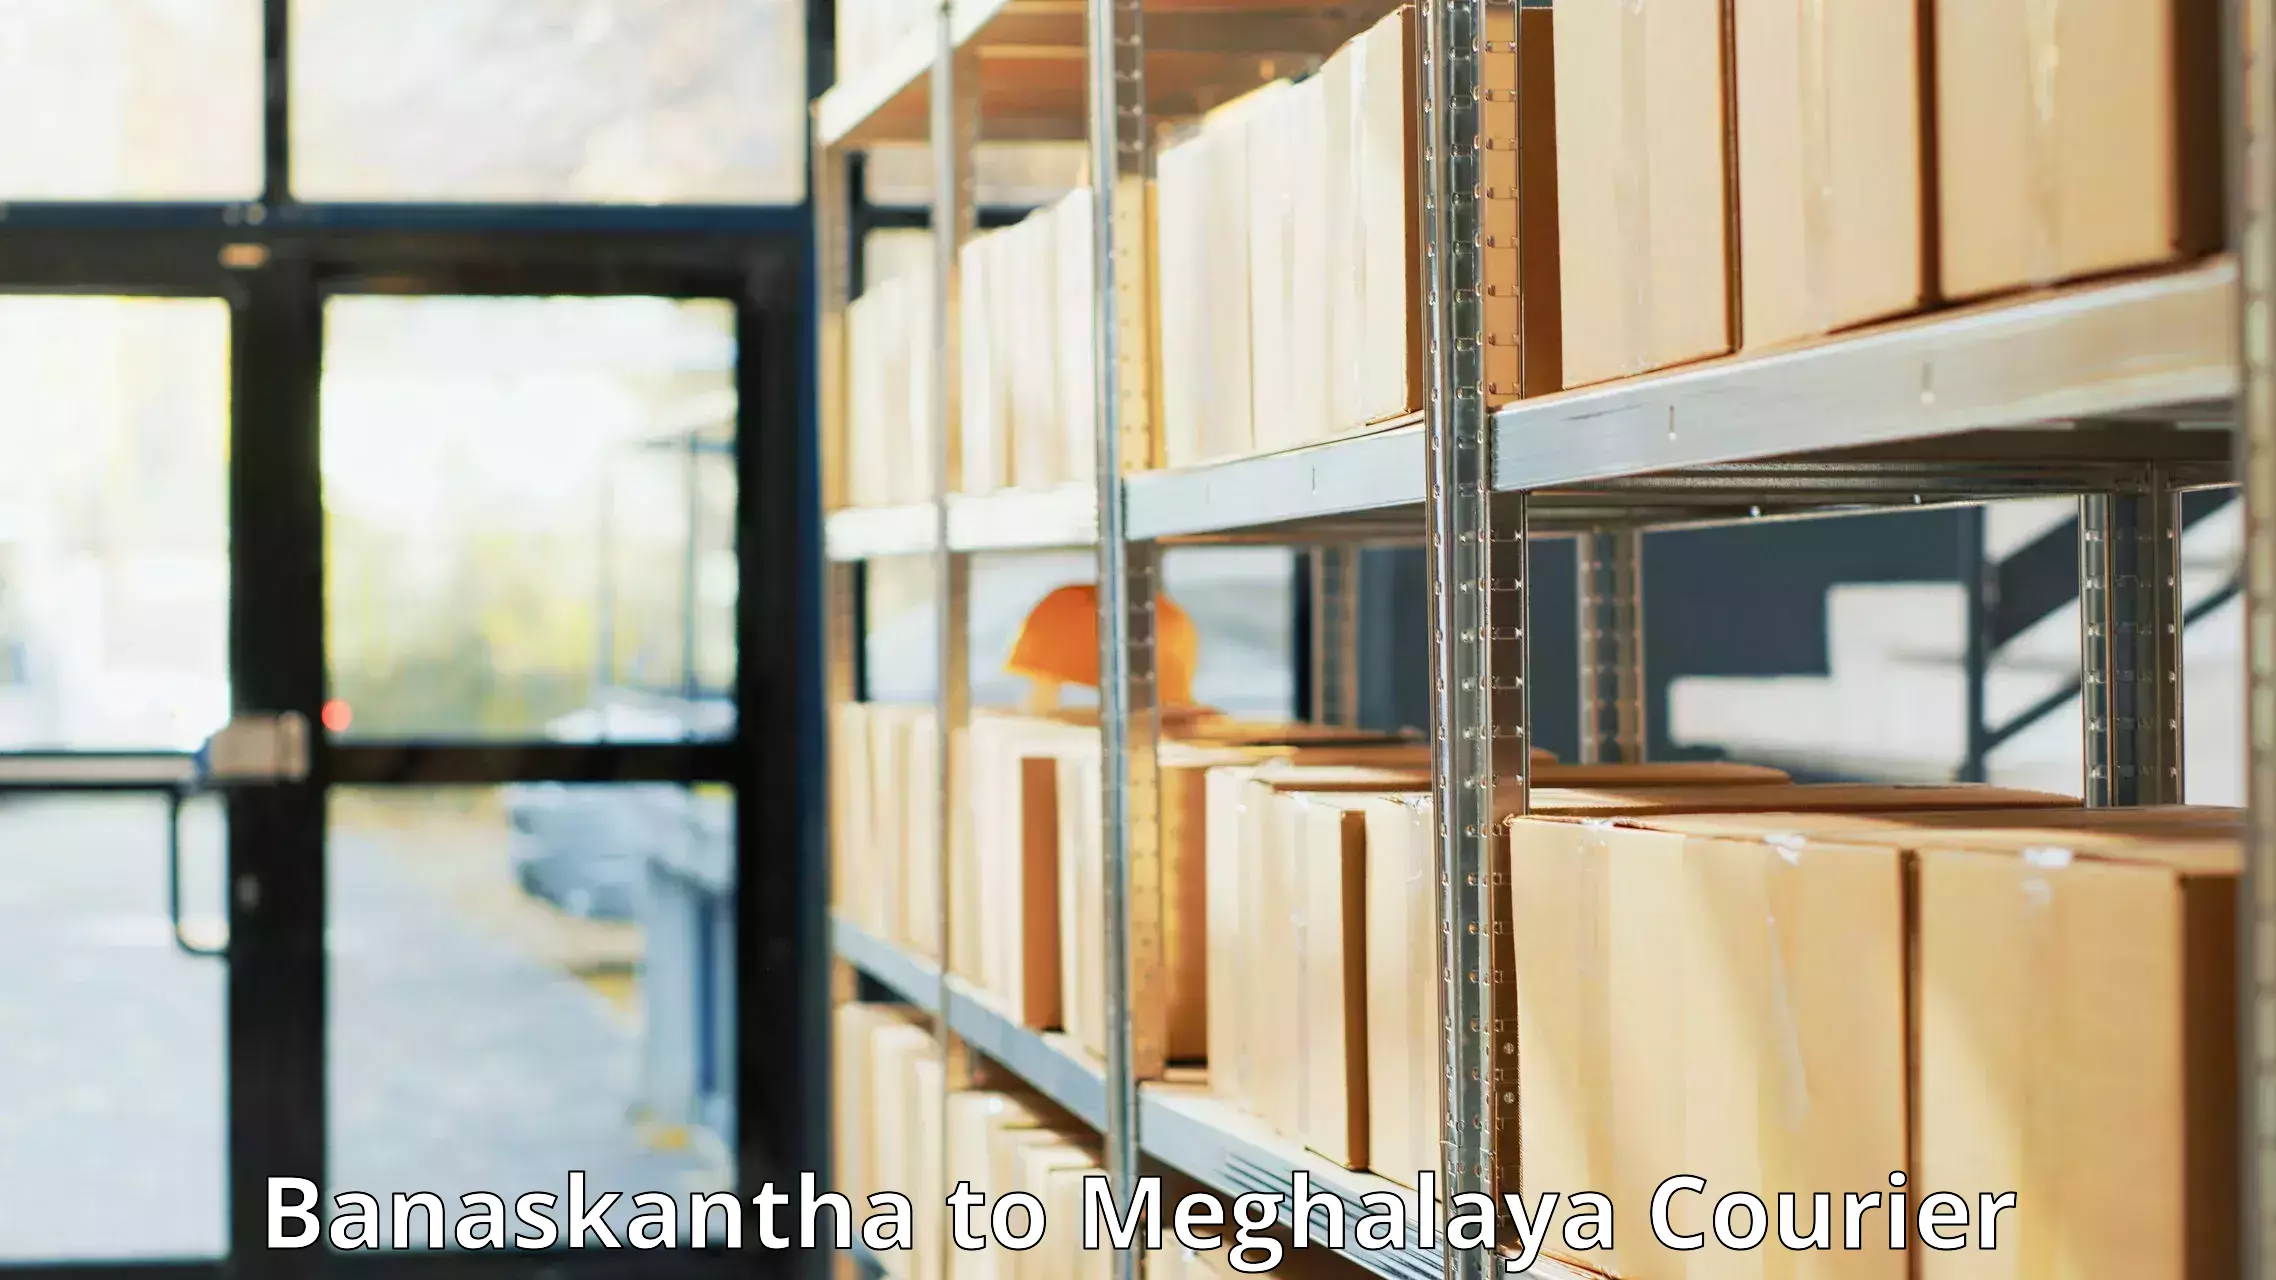 Digital courier platforms Banaskantha to Meghalaya